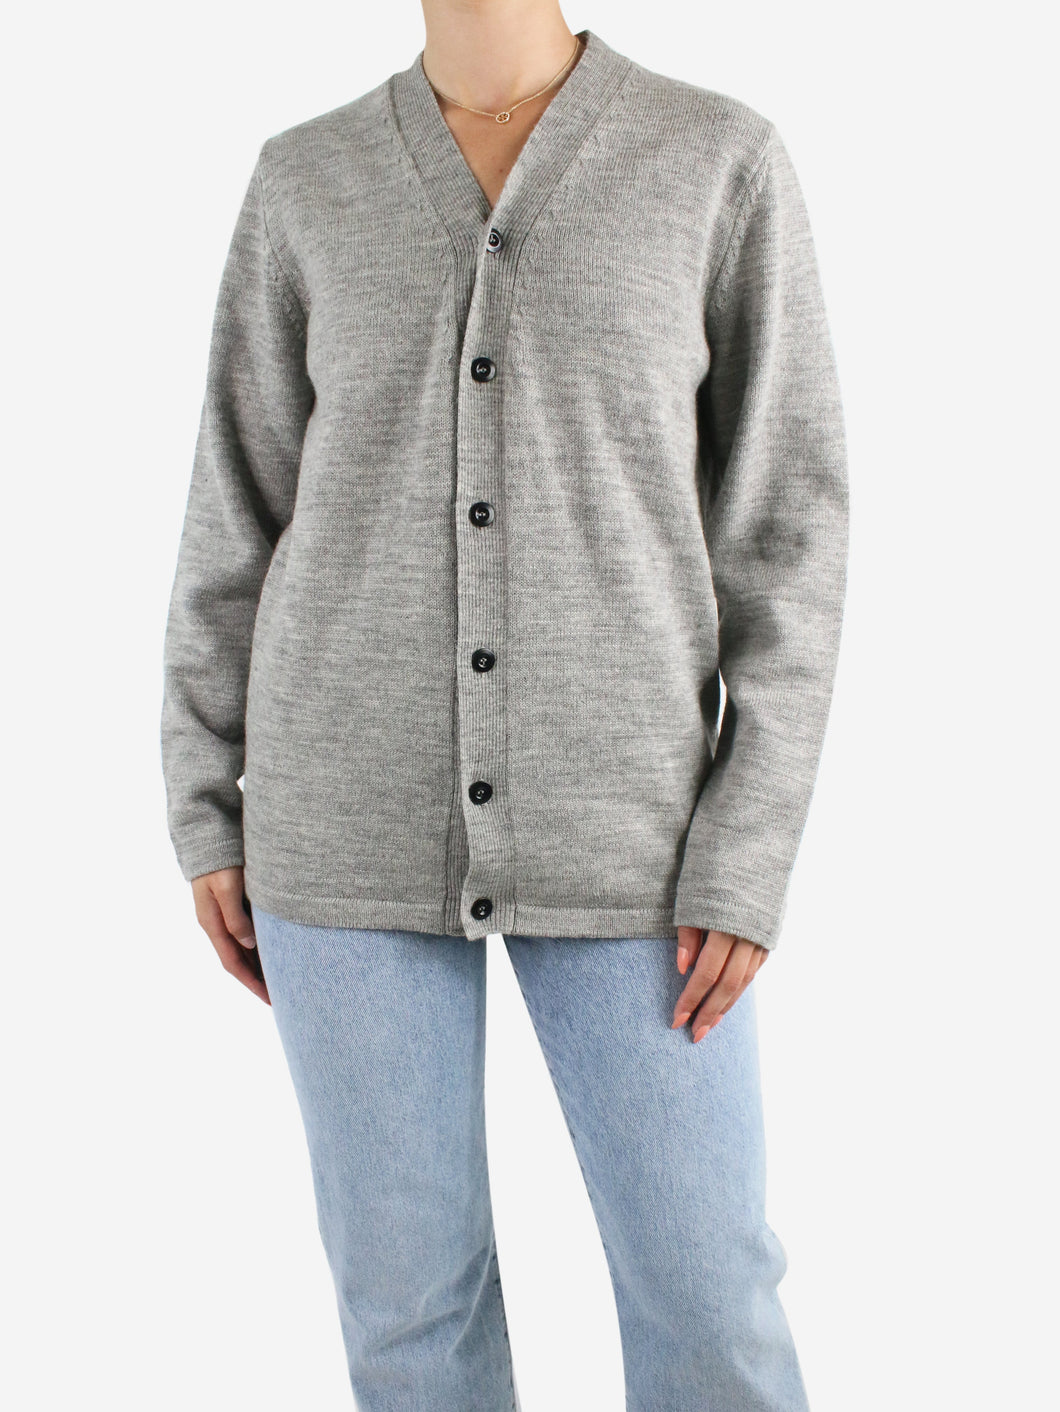 Grey wool cardigan - size S Knitwear Margaret Howell 